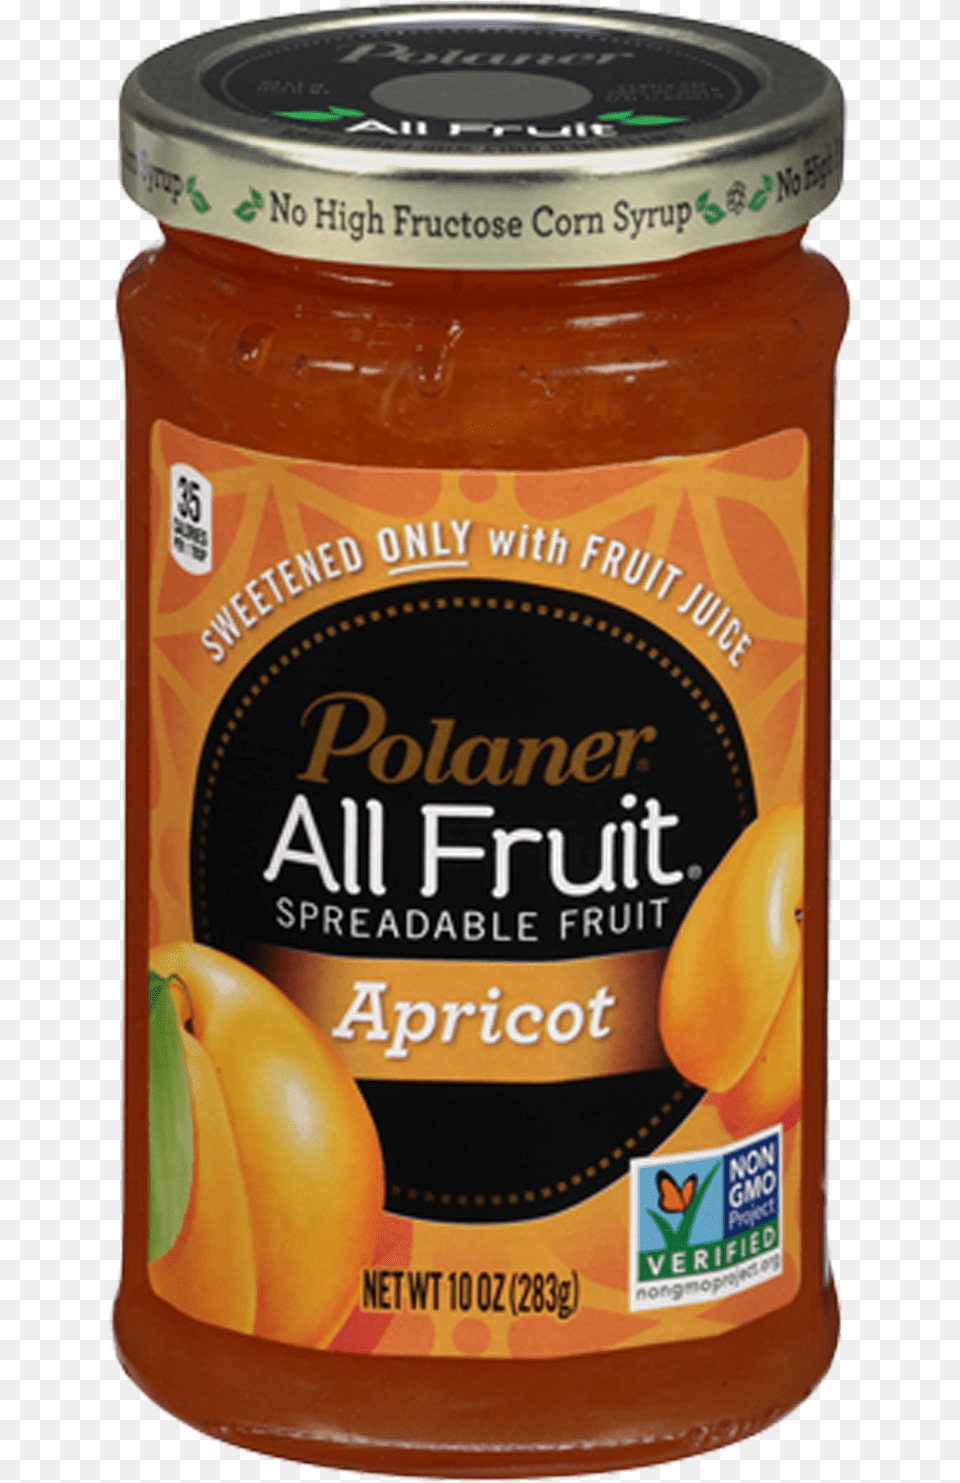 Polaner Apricot All Fruit Polaner Apricot All Fruit Polaner All Fruit Strawberry, Food, Plant, Produce, Jam Free Transparent Png